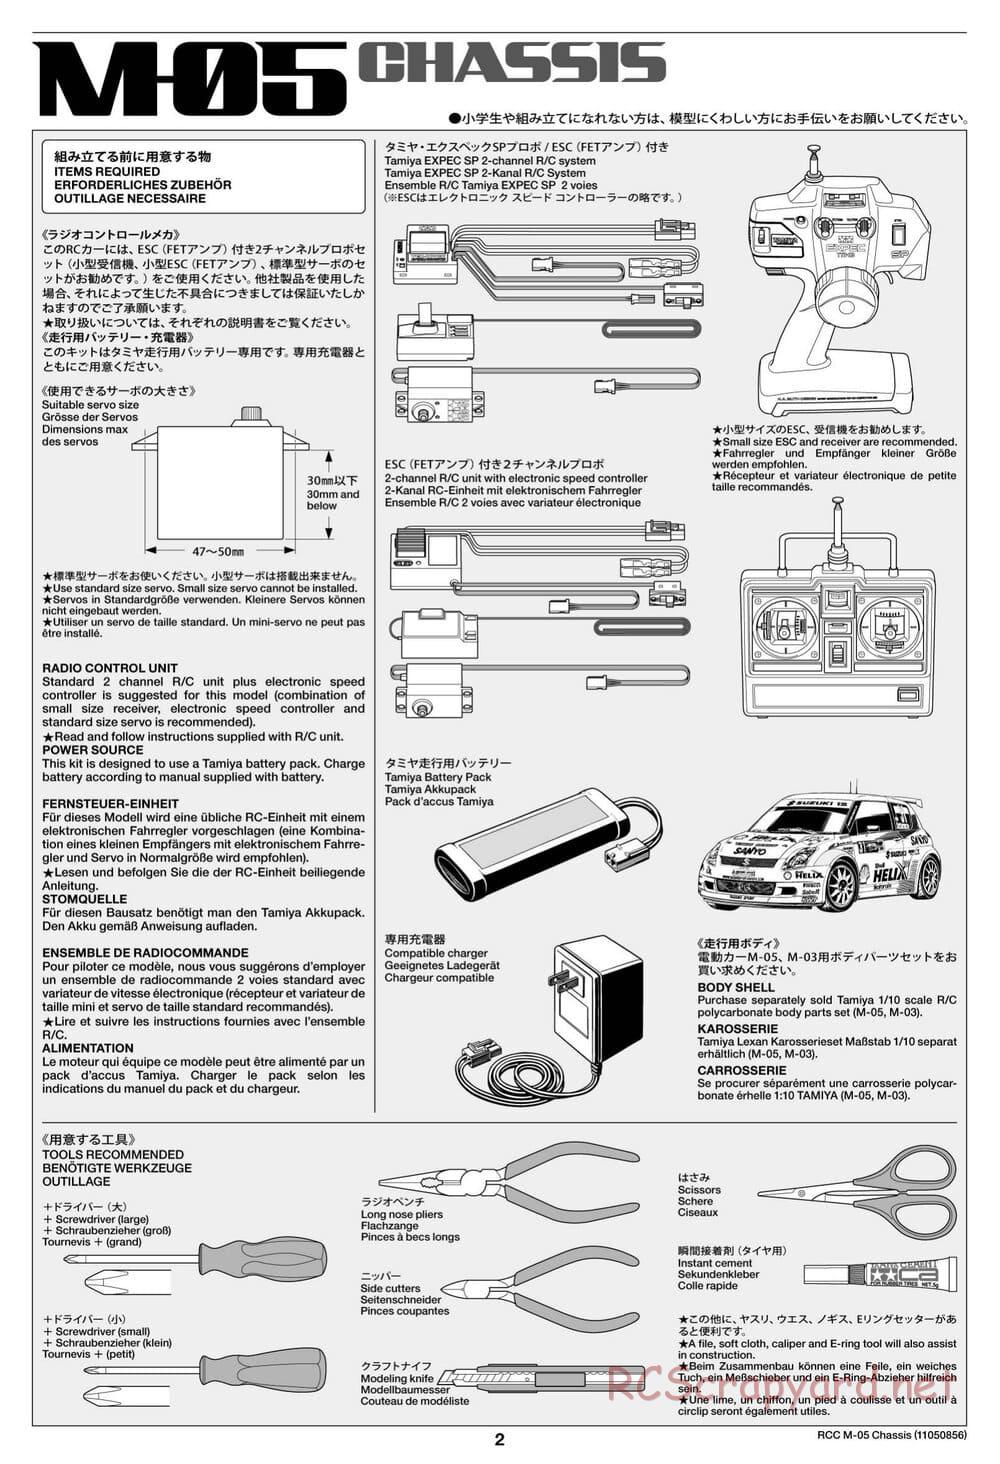 Tamiya - M-05 Chassis - Manual - Page 2